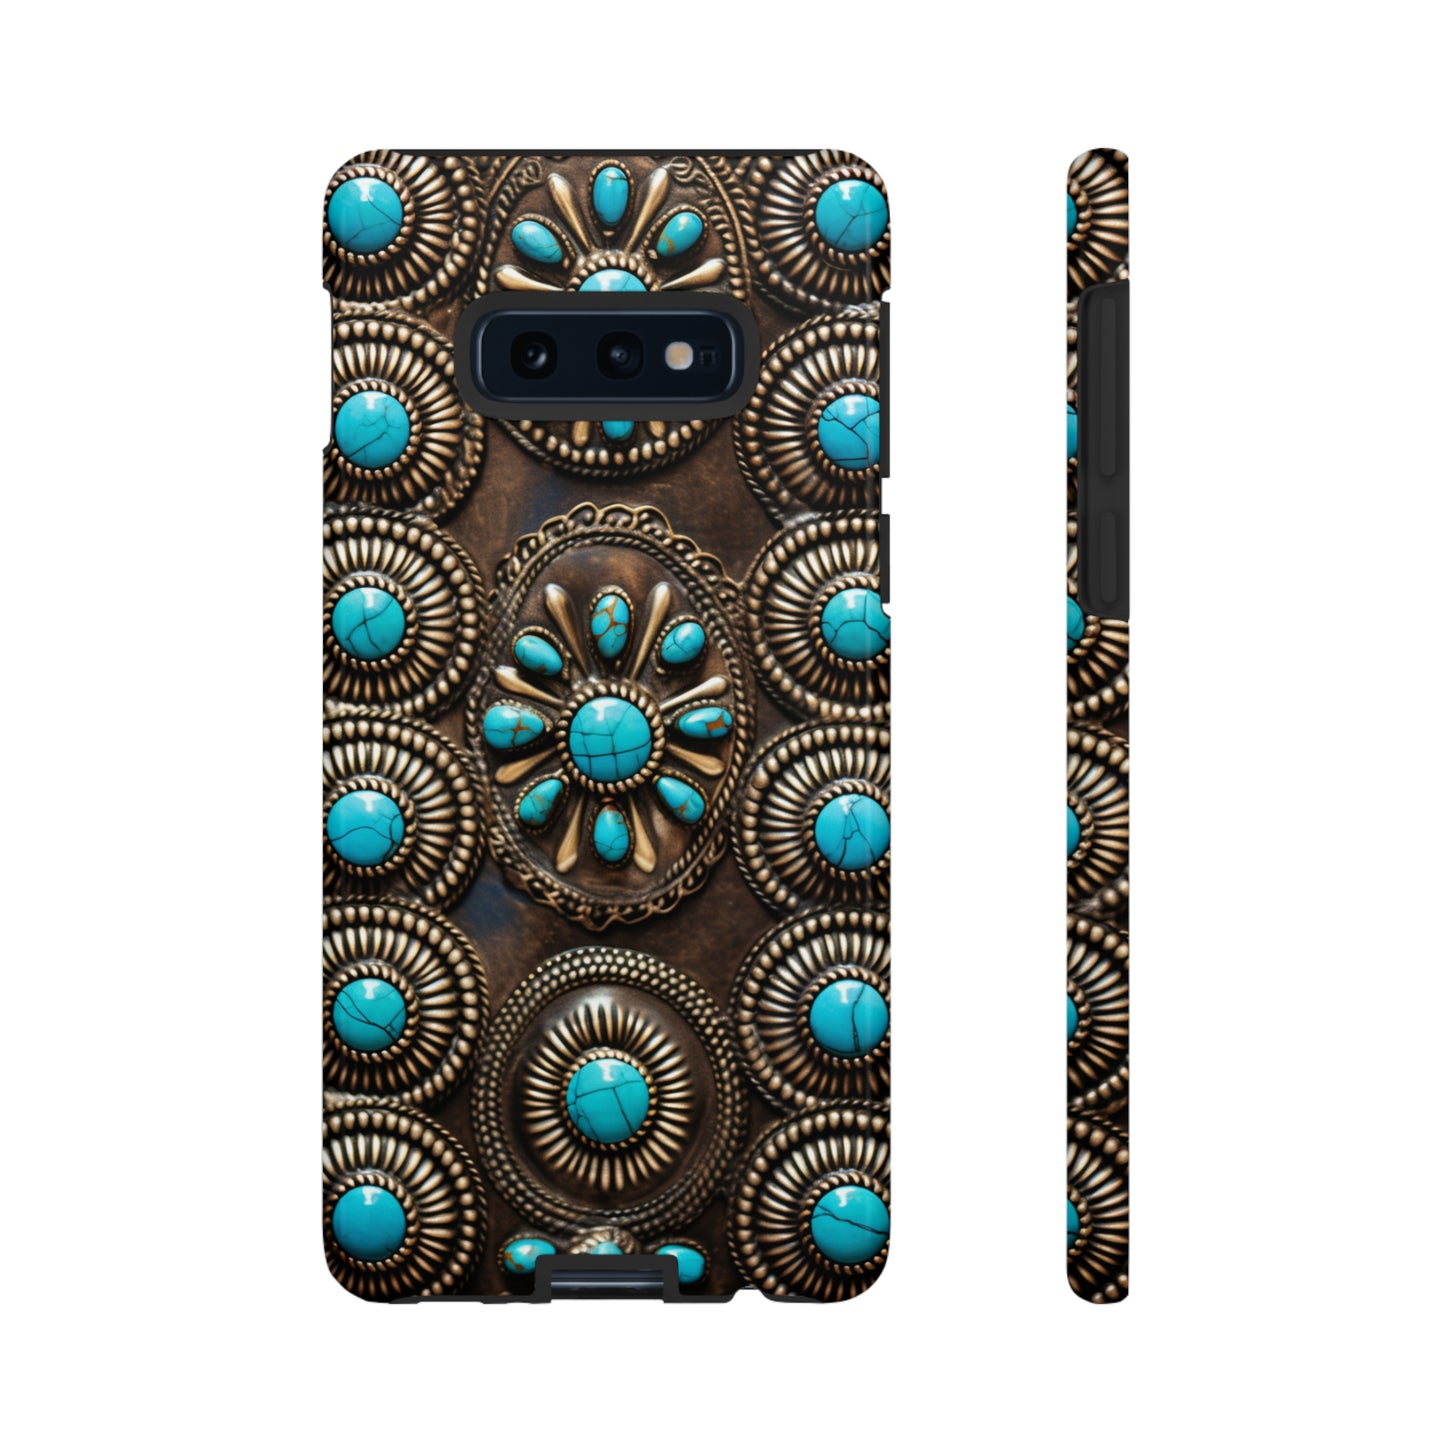 Navajo Jewelry Phone Case